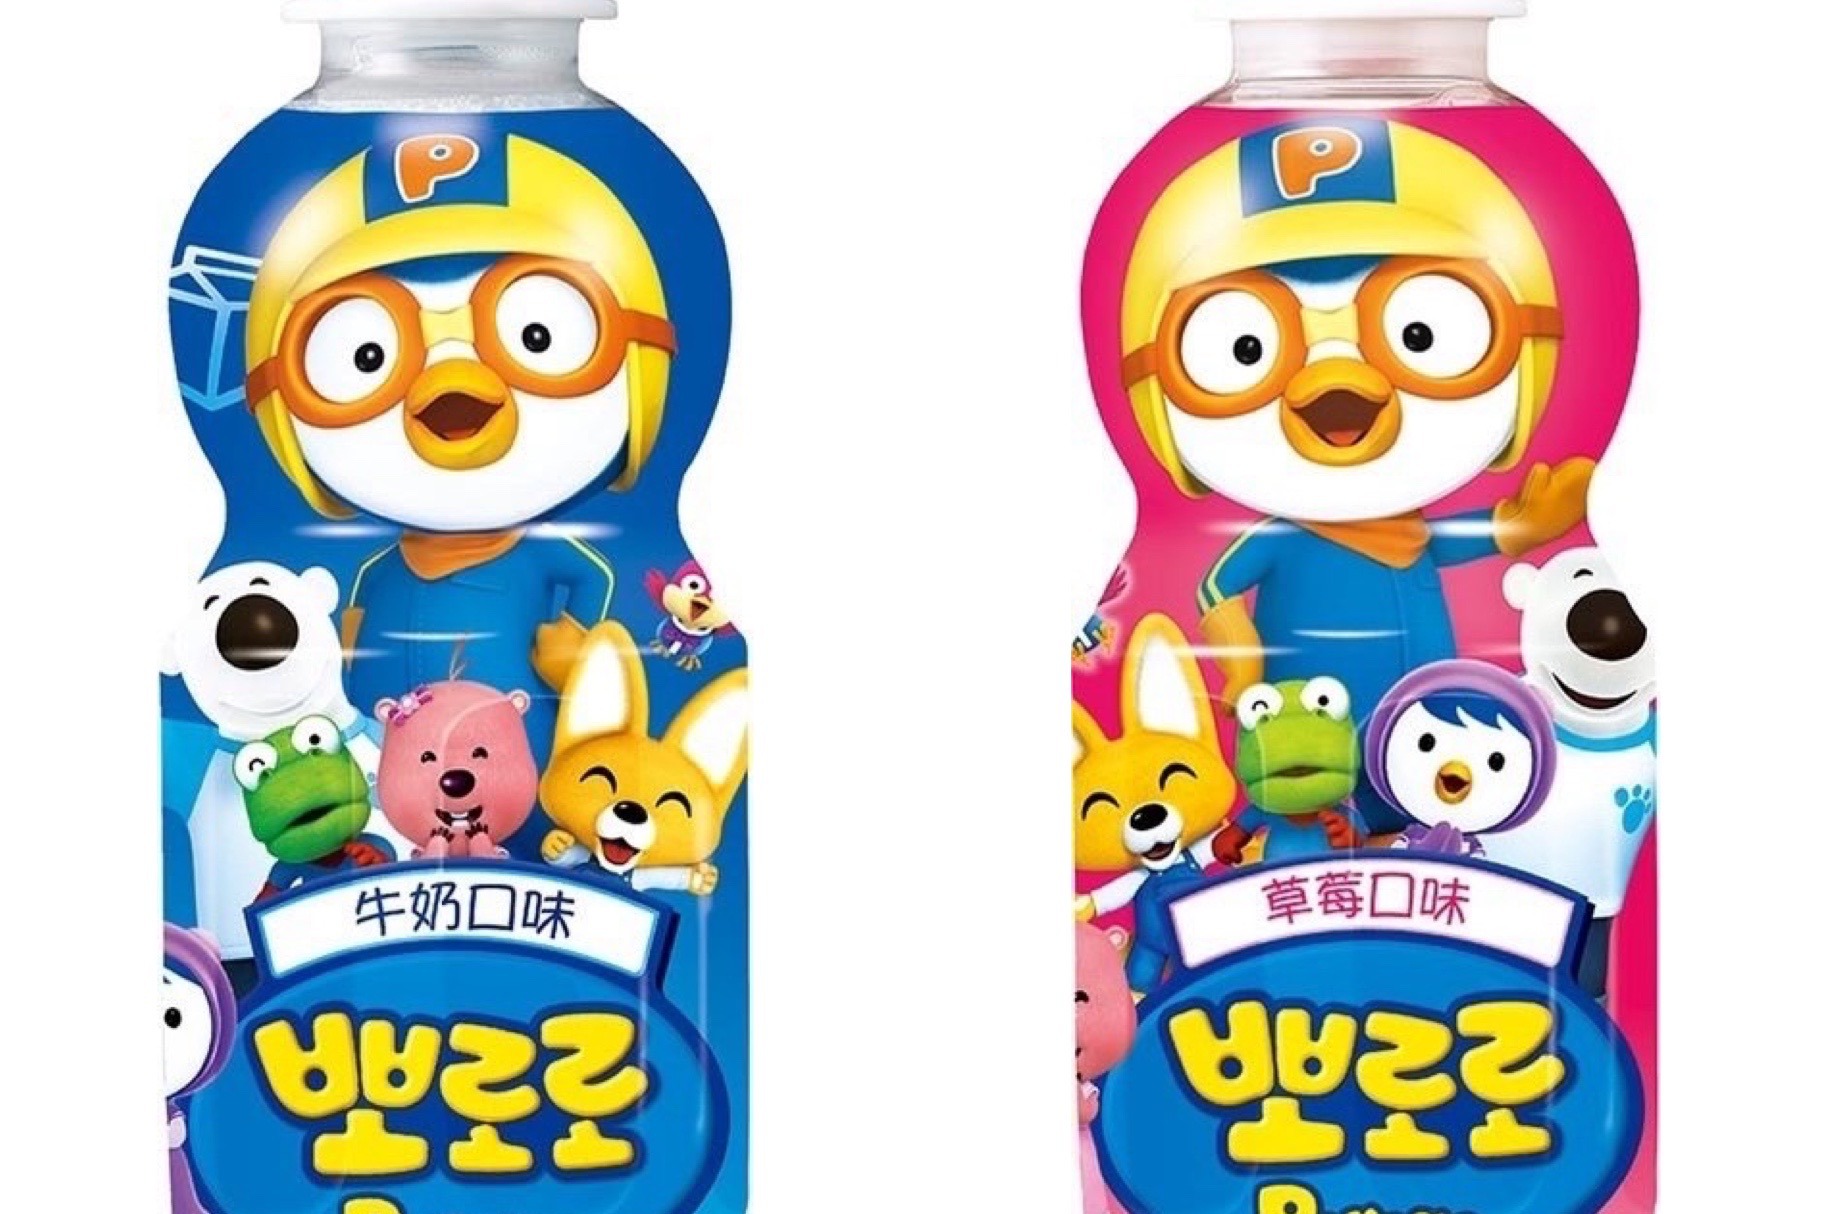 家樂福<u>兒童節</u>當天量販消費免費送多多 滿額加碼送韓國乳酸飲